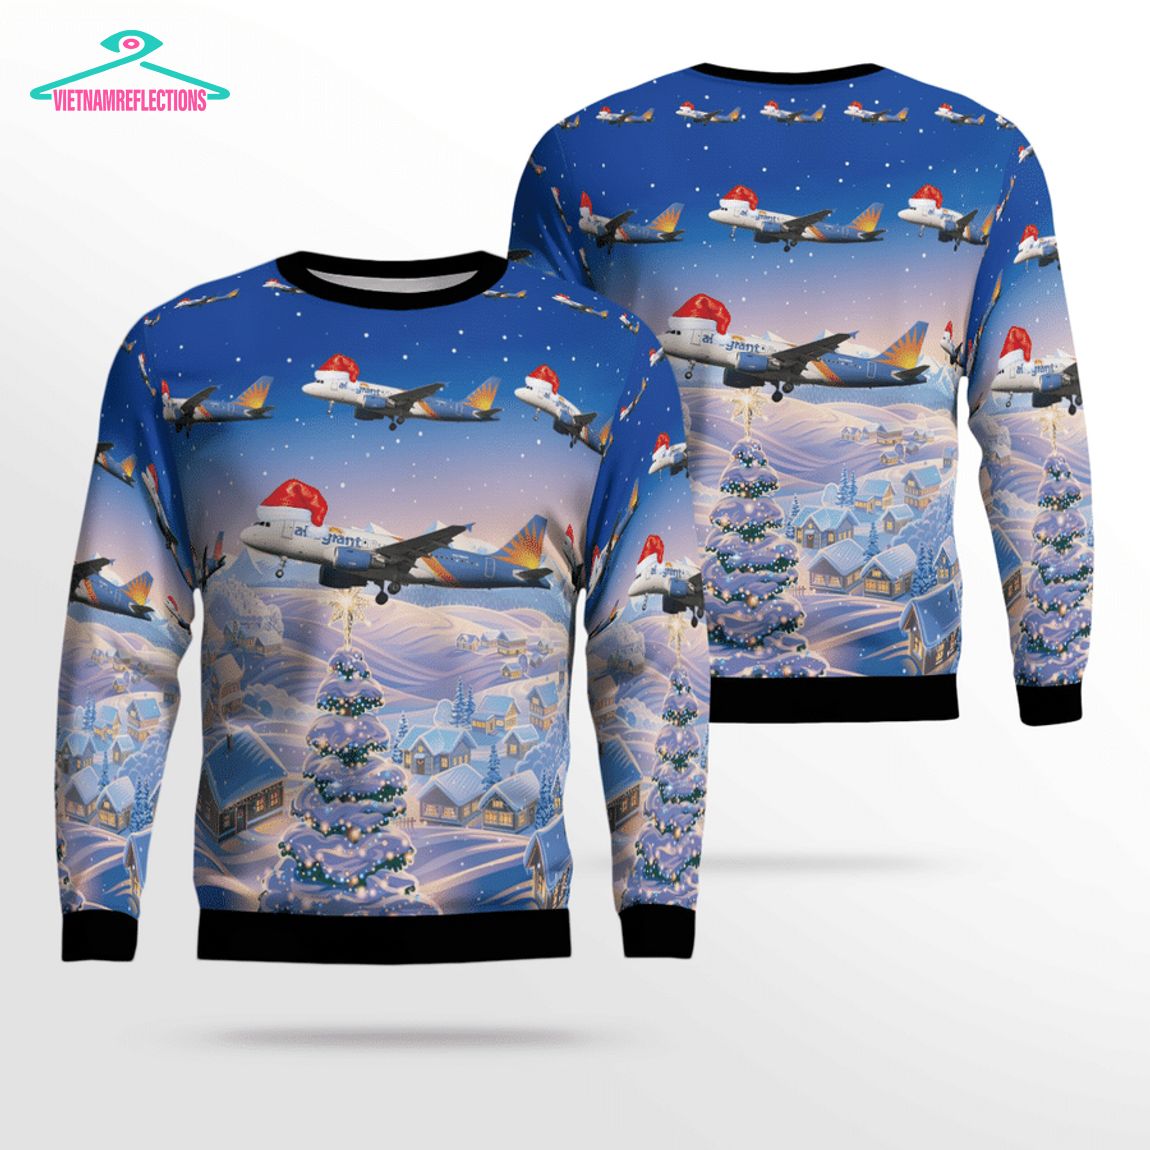 Allegiant Air Airbus A319-111 3D Christmas Sweater - Cutting dash